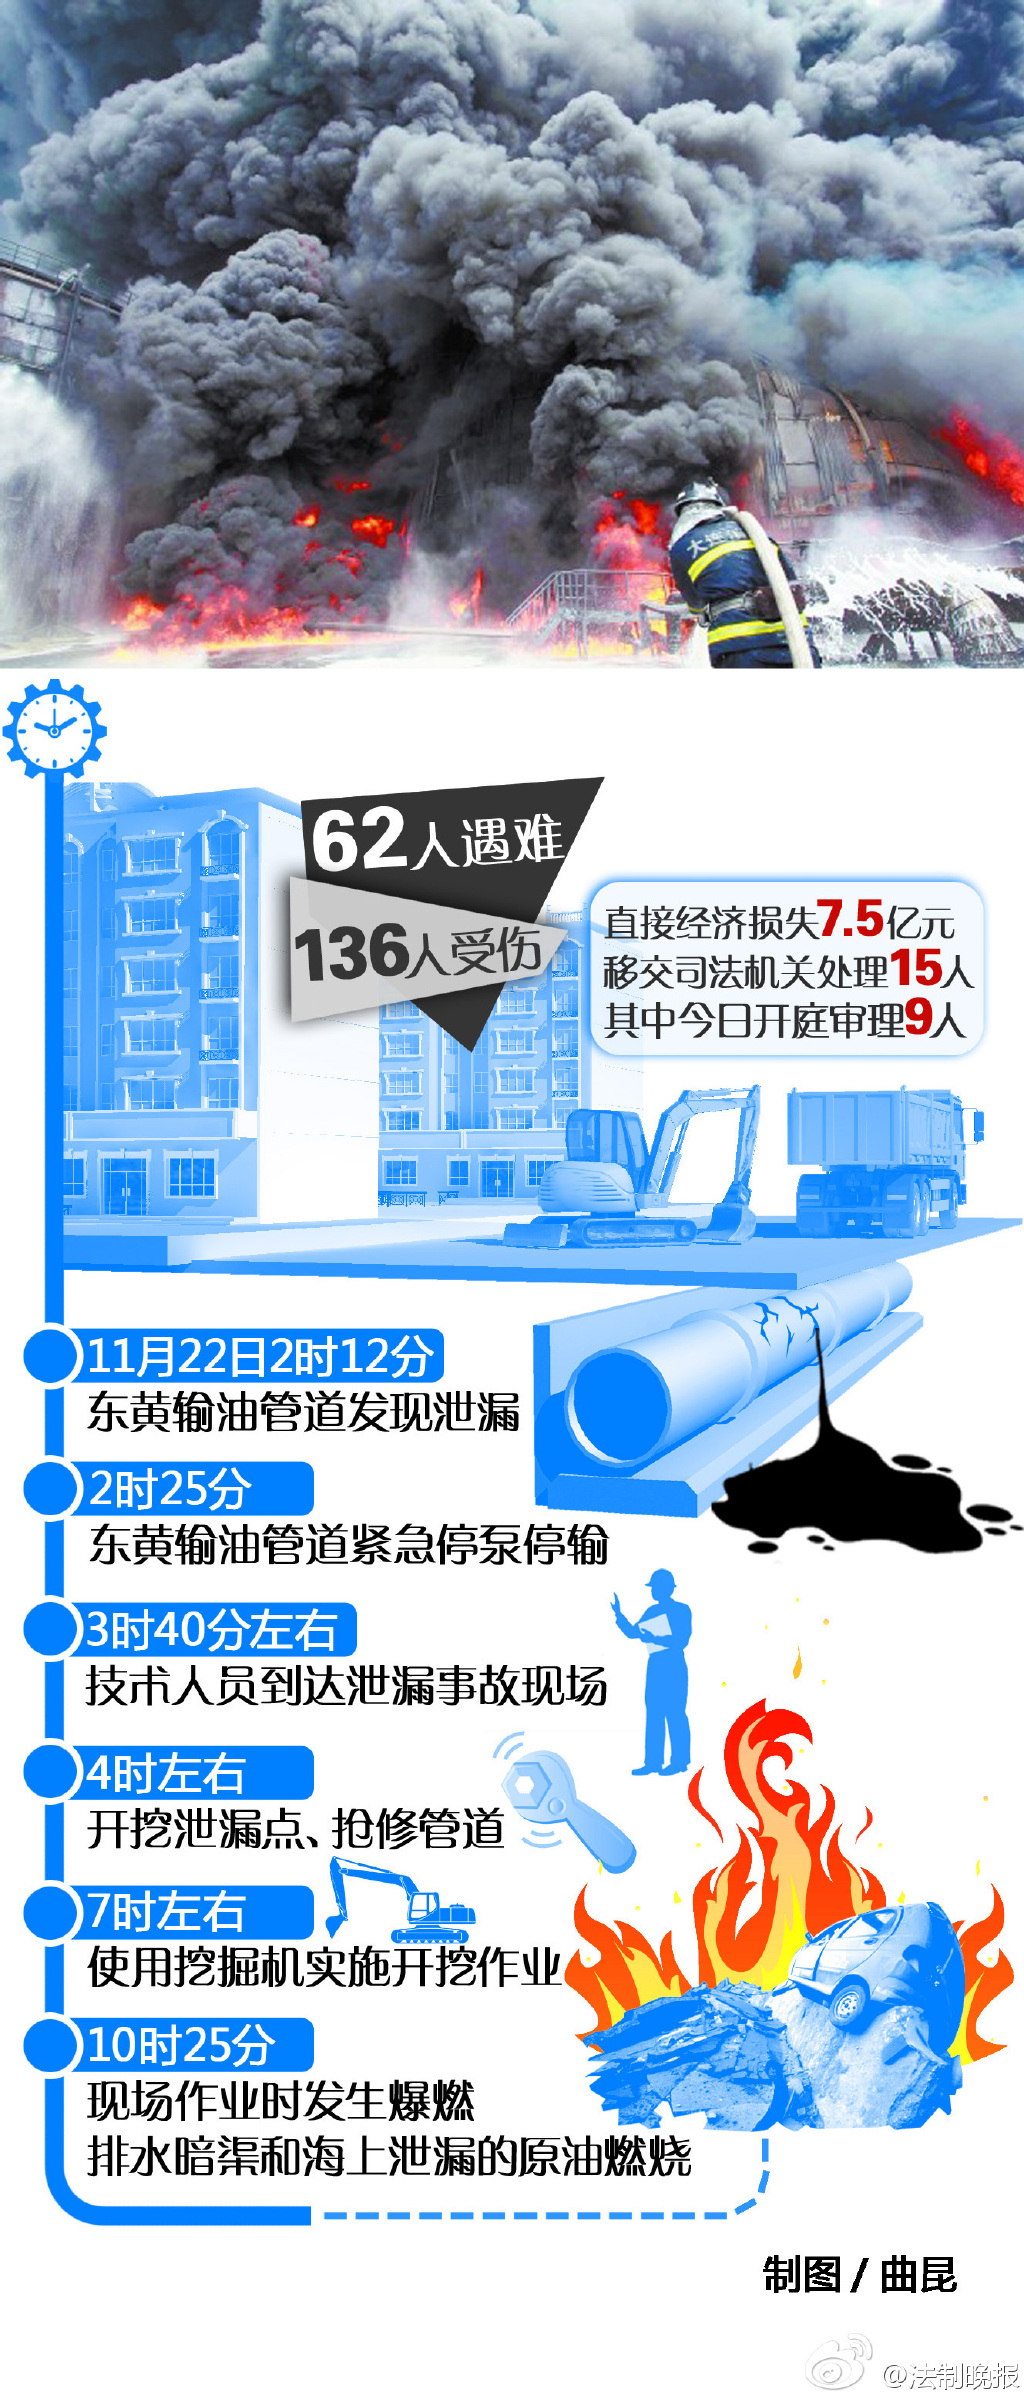 2013青岛11·22中石化东黄输油管道泄漏爆炸事故 – 古哈科技